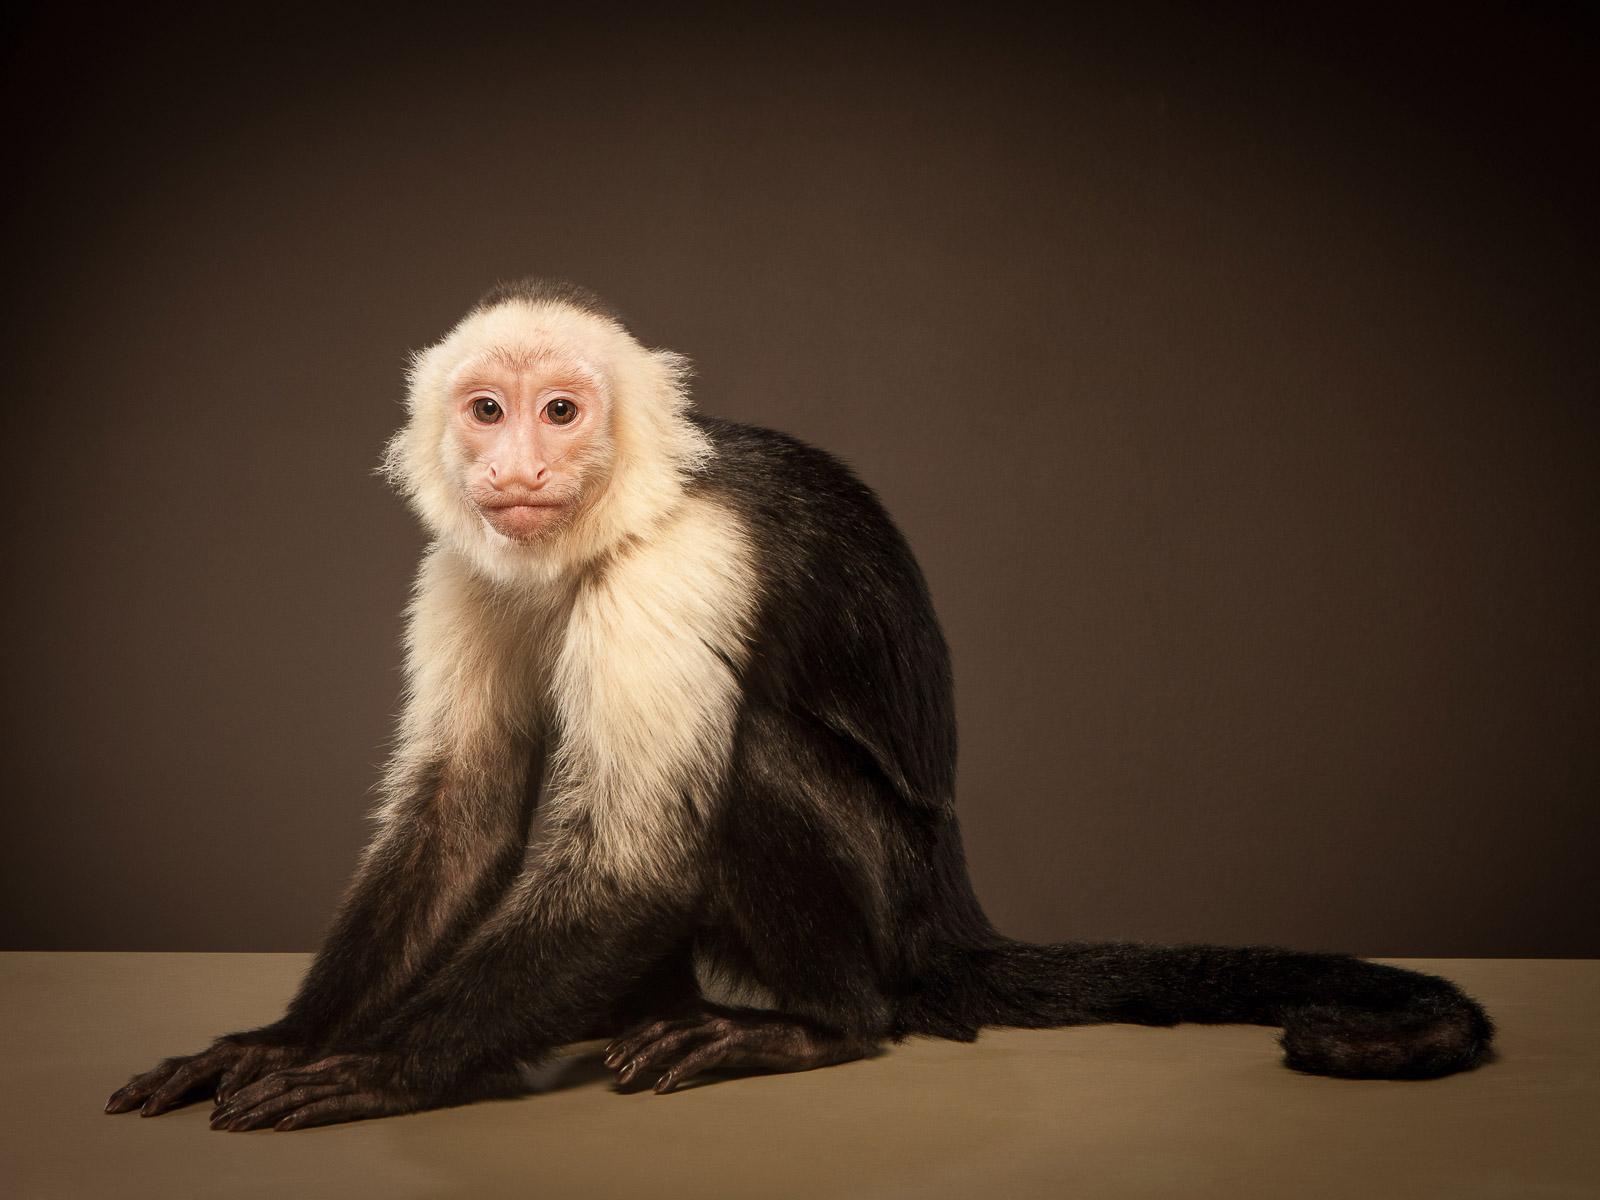 Capuchin 1, signierter Tier-Kunstdruck in limitierter Auflage, brauner und weißer Affe (Schwarz), Color Photograph, von Tim Platt